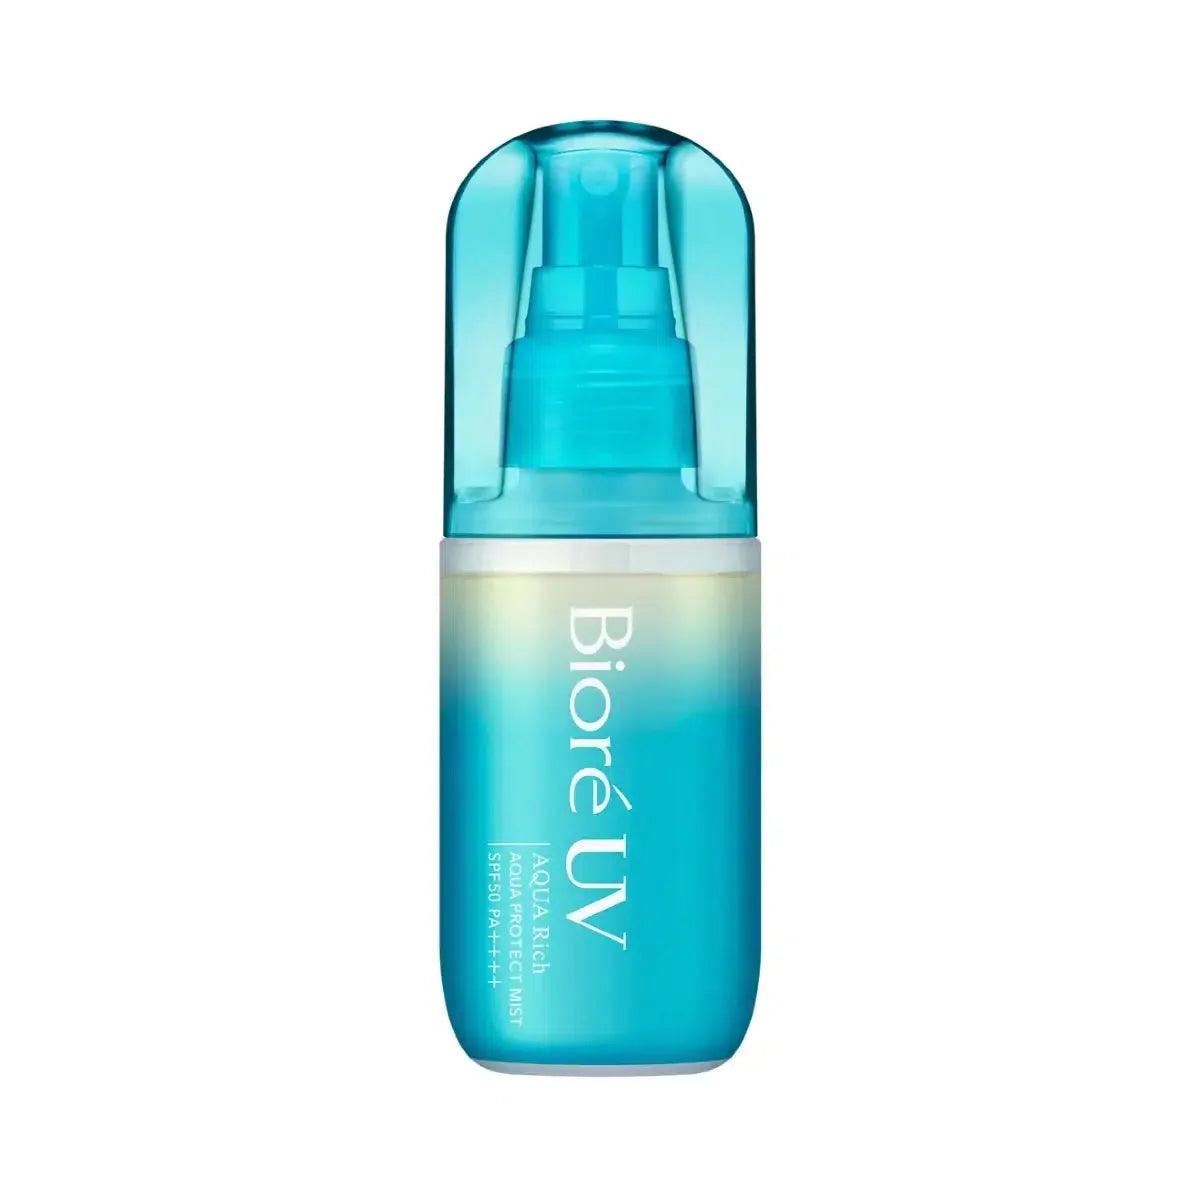 Kao Biore UV Aqua Rich Sunscreen Protect Mist SPF50+ 60ml